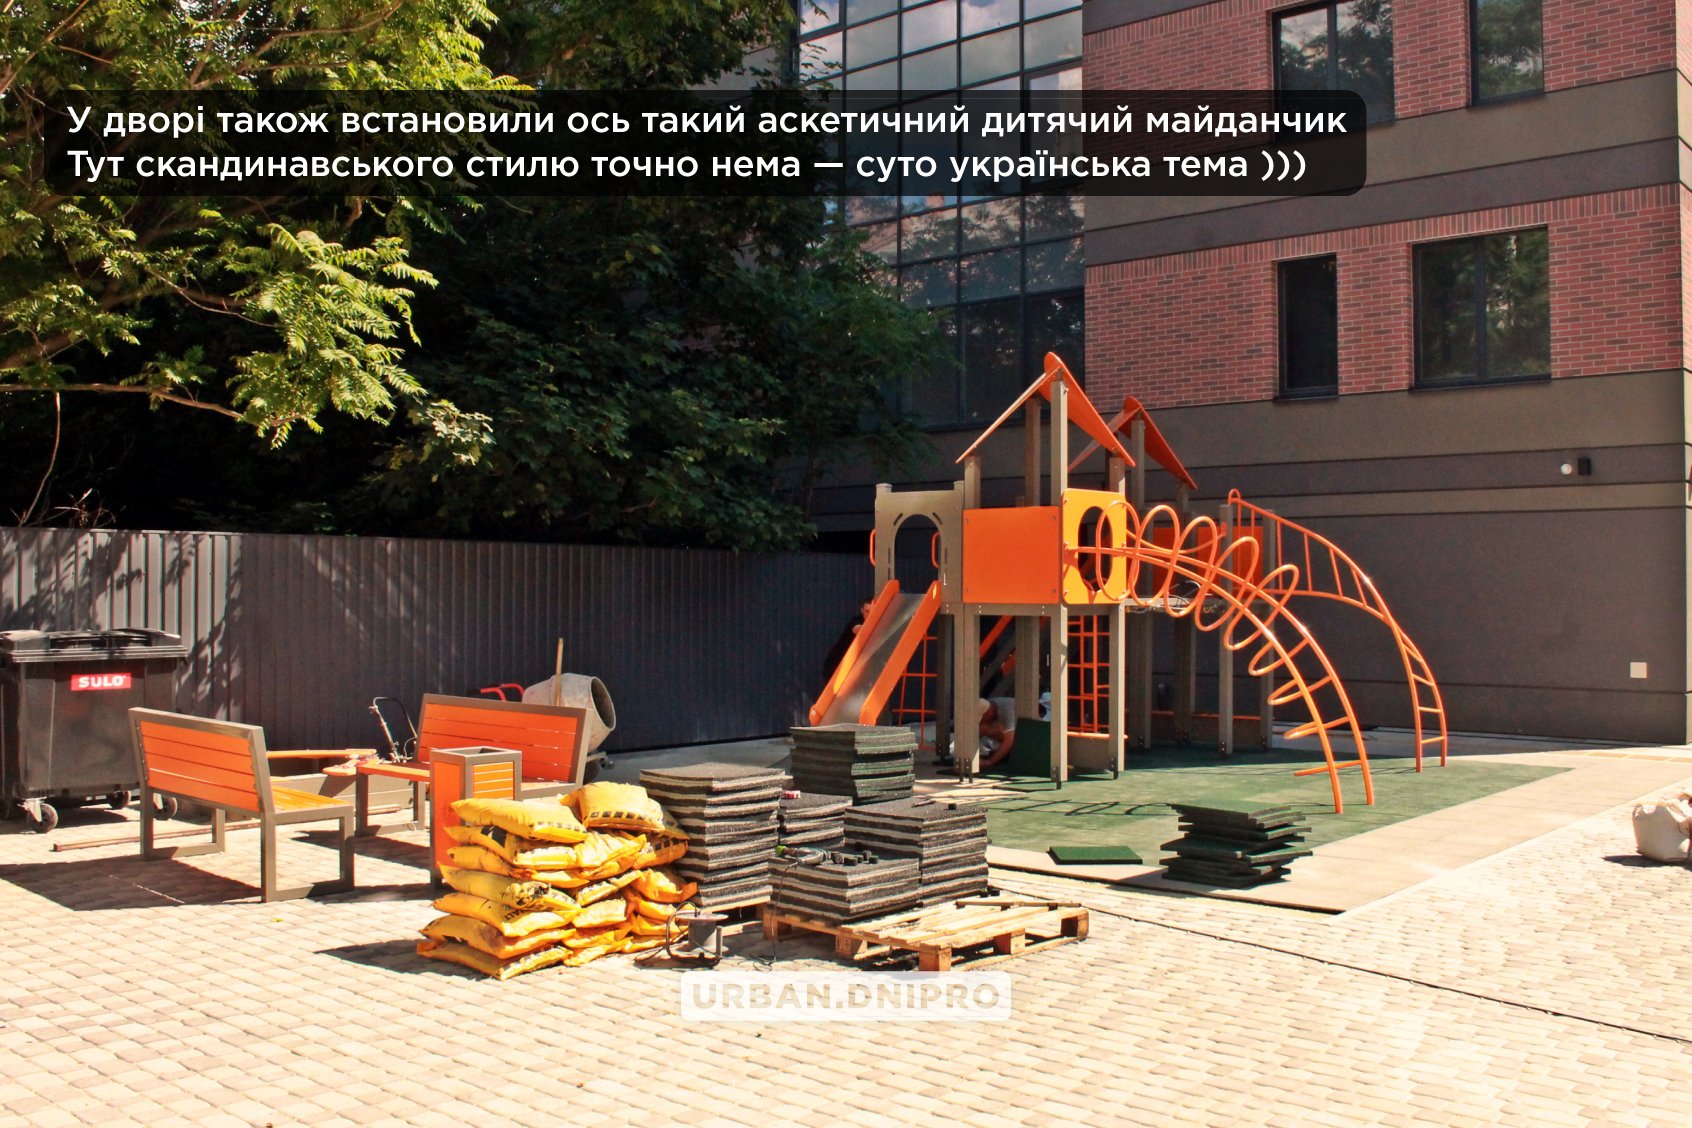 Детская площадка в украинском стиле – || фото: facebook.com/urban.dnipro